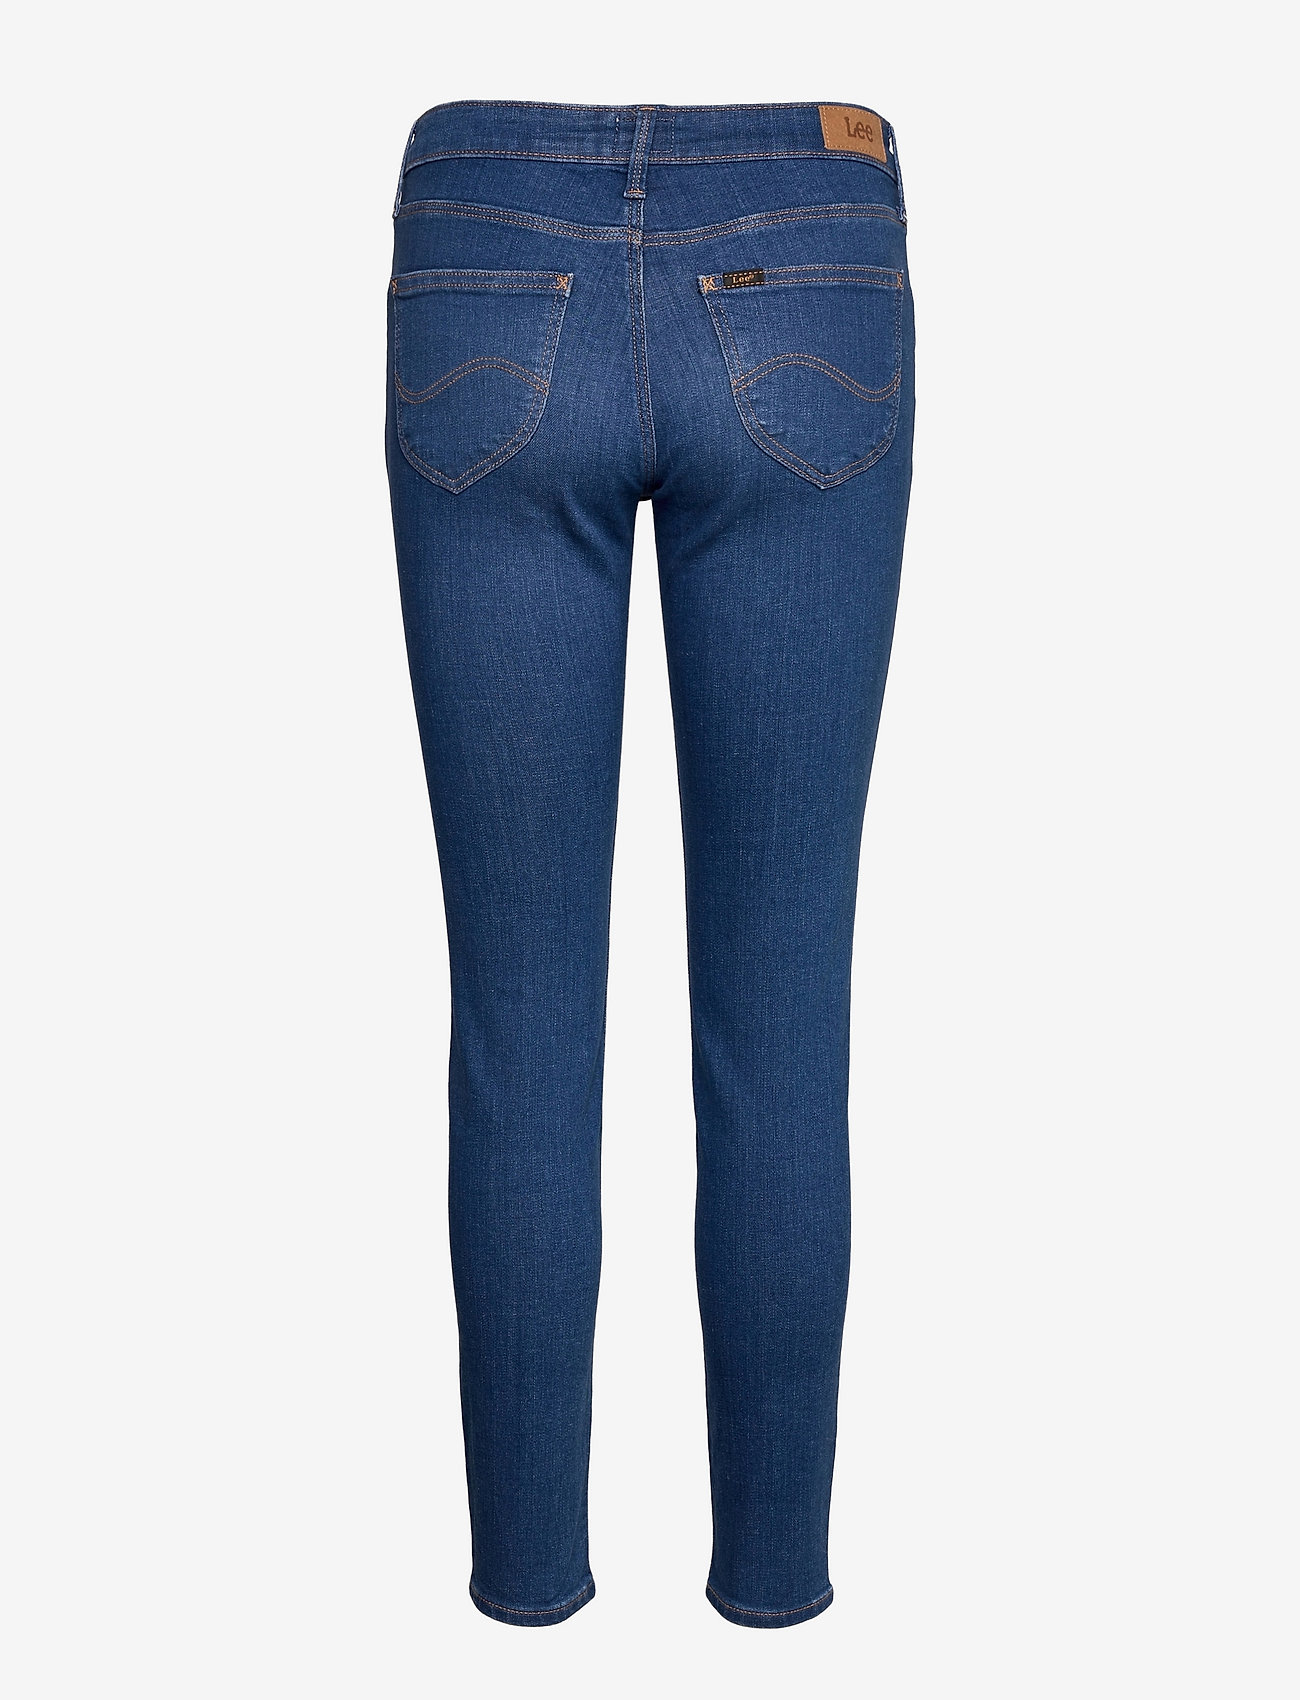 Lee Jeans - SCARLETT - slim jeans - dark aya - 1